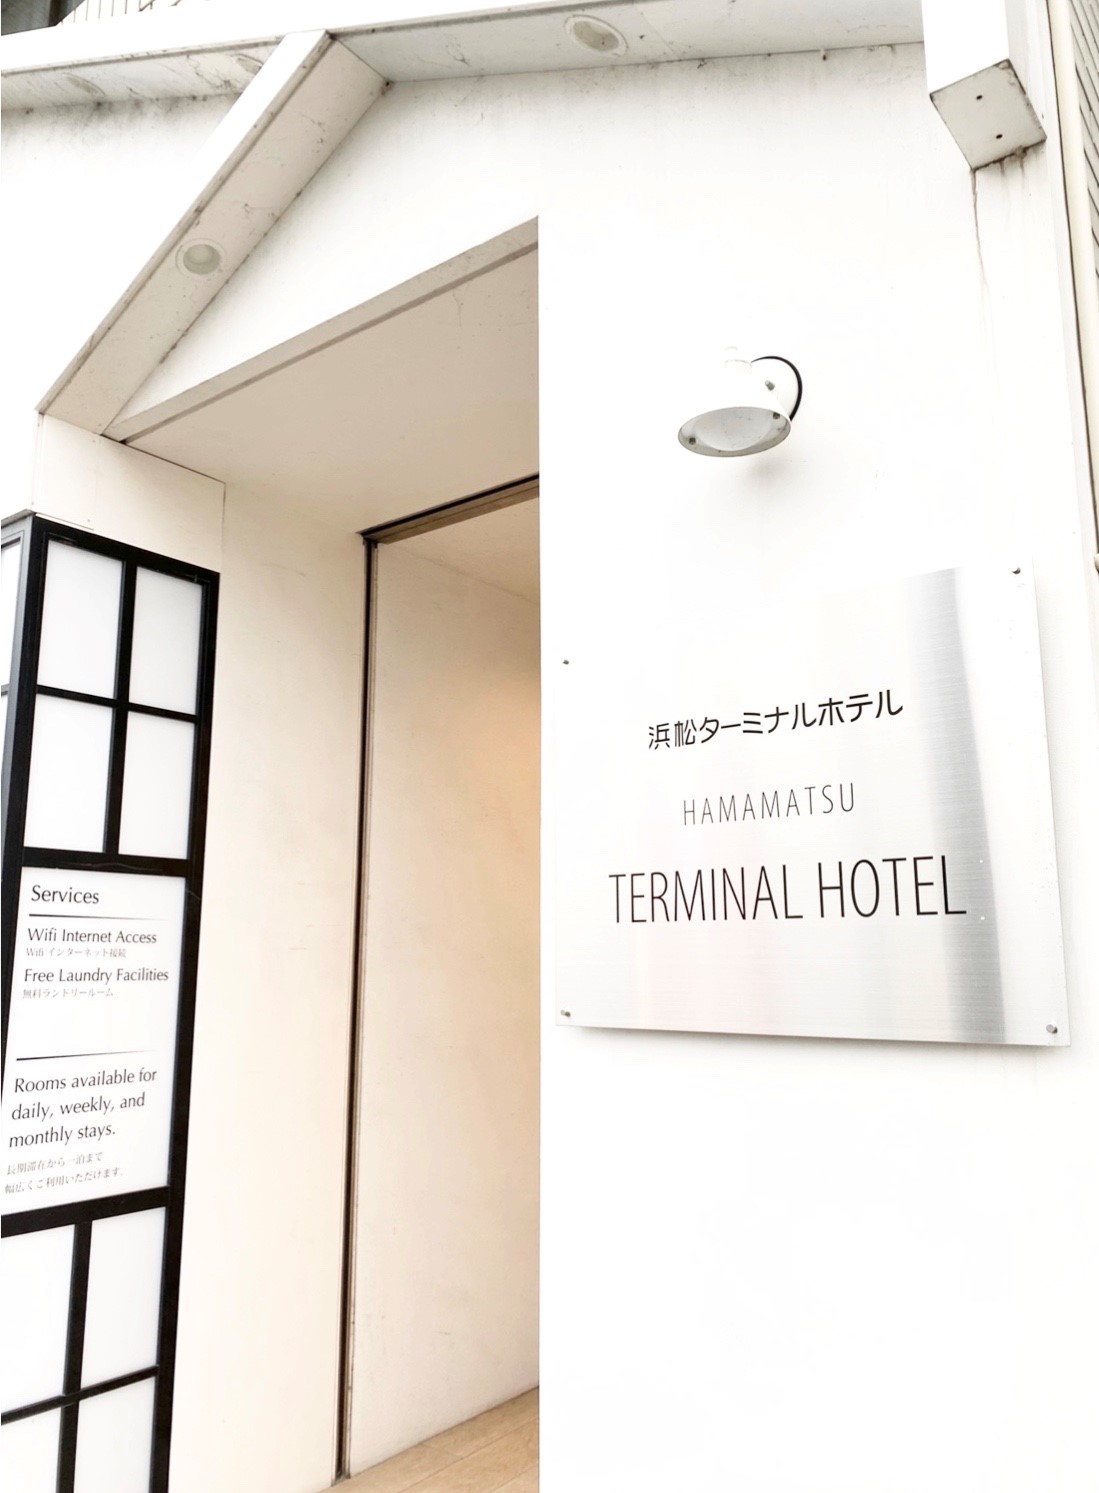 Hamamatsu Terminal Hotel Annex